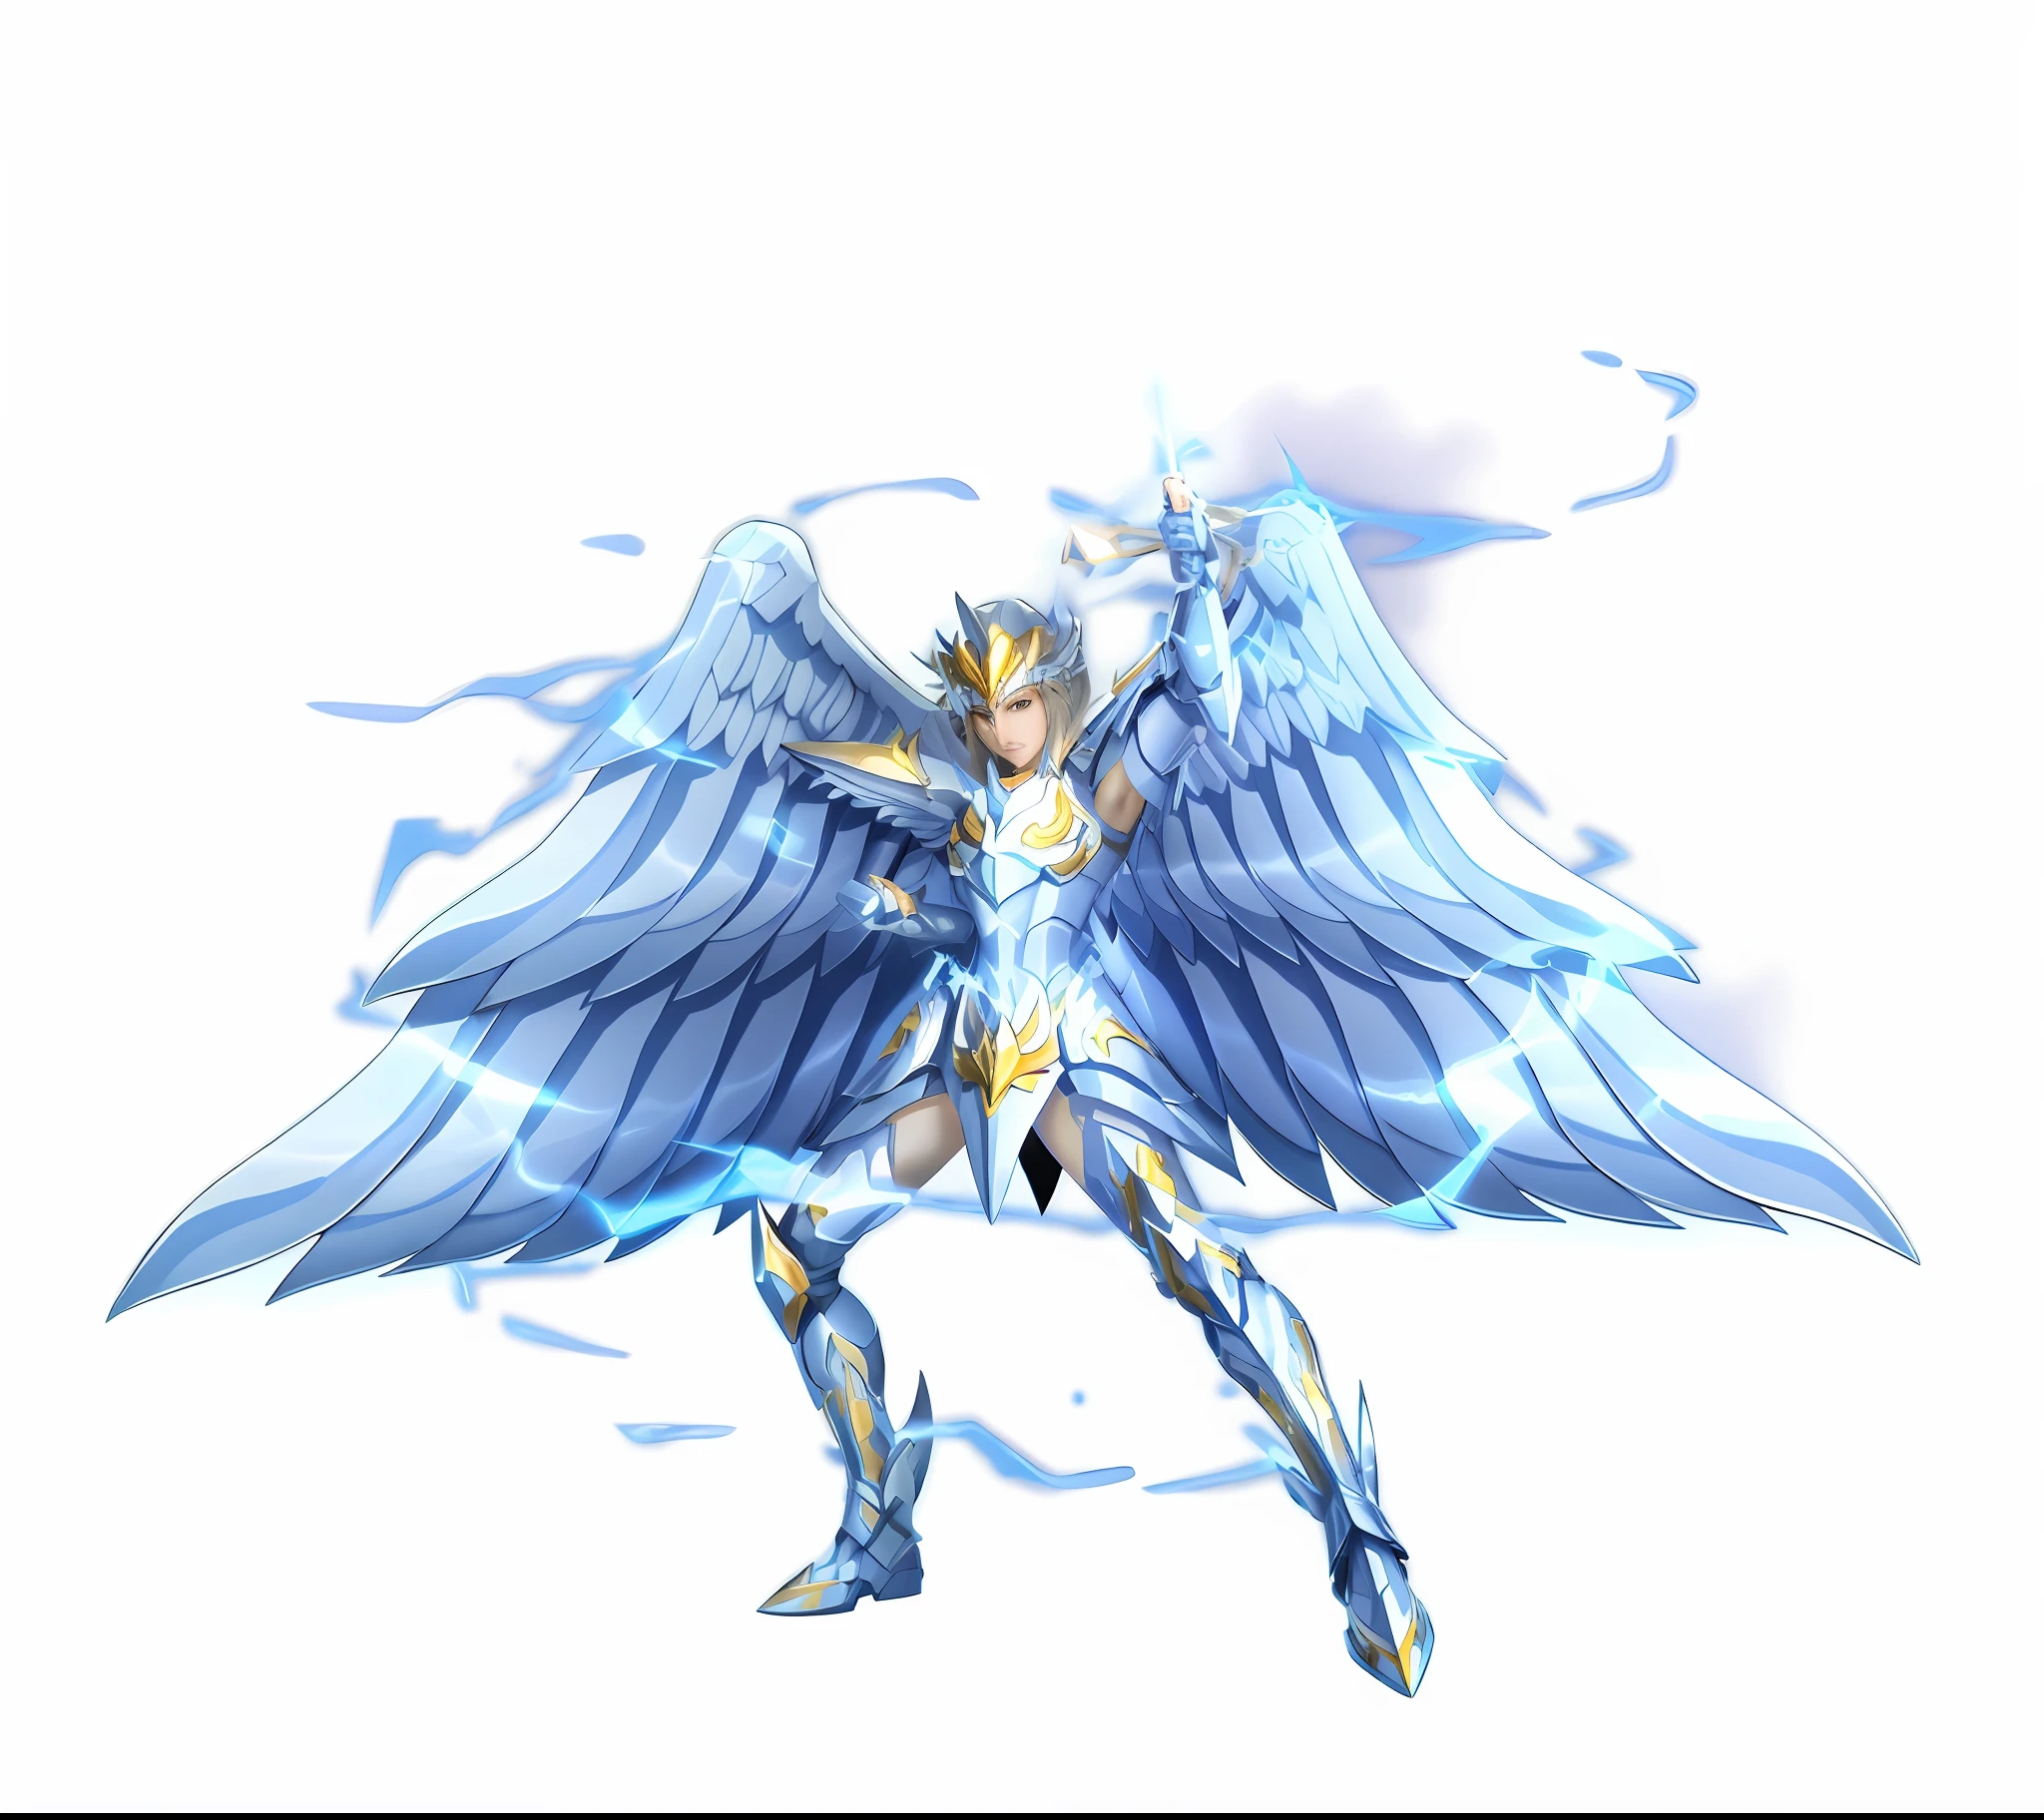 крупный план человека с большими сине-белыми крыльями - SeaArt AI